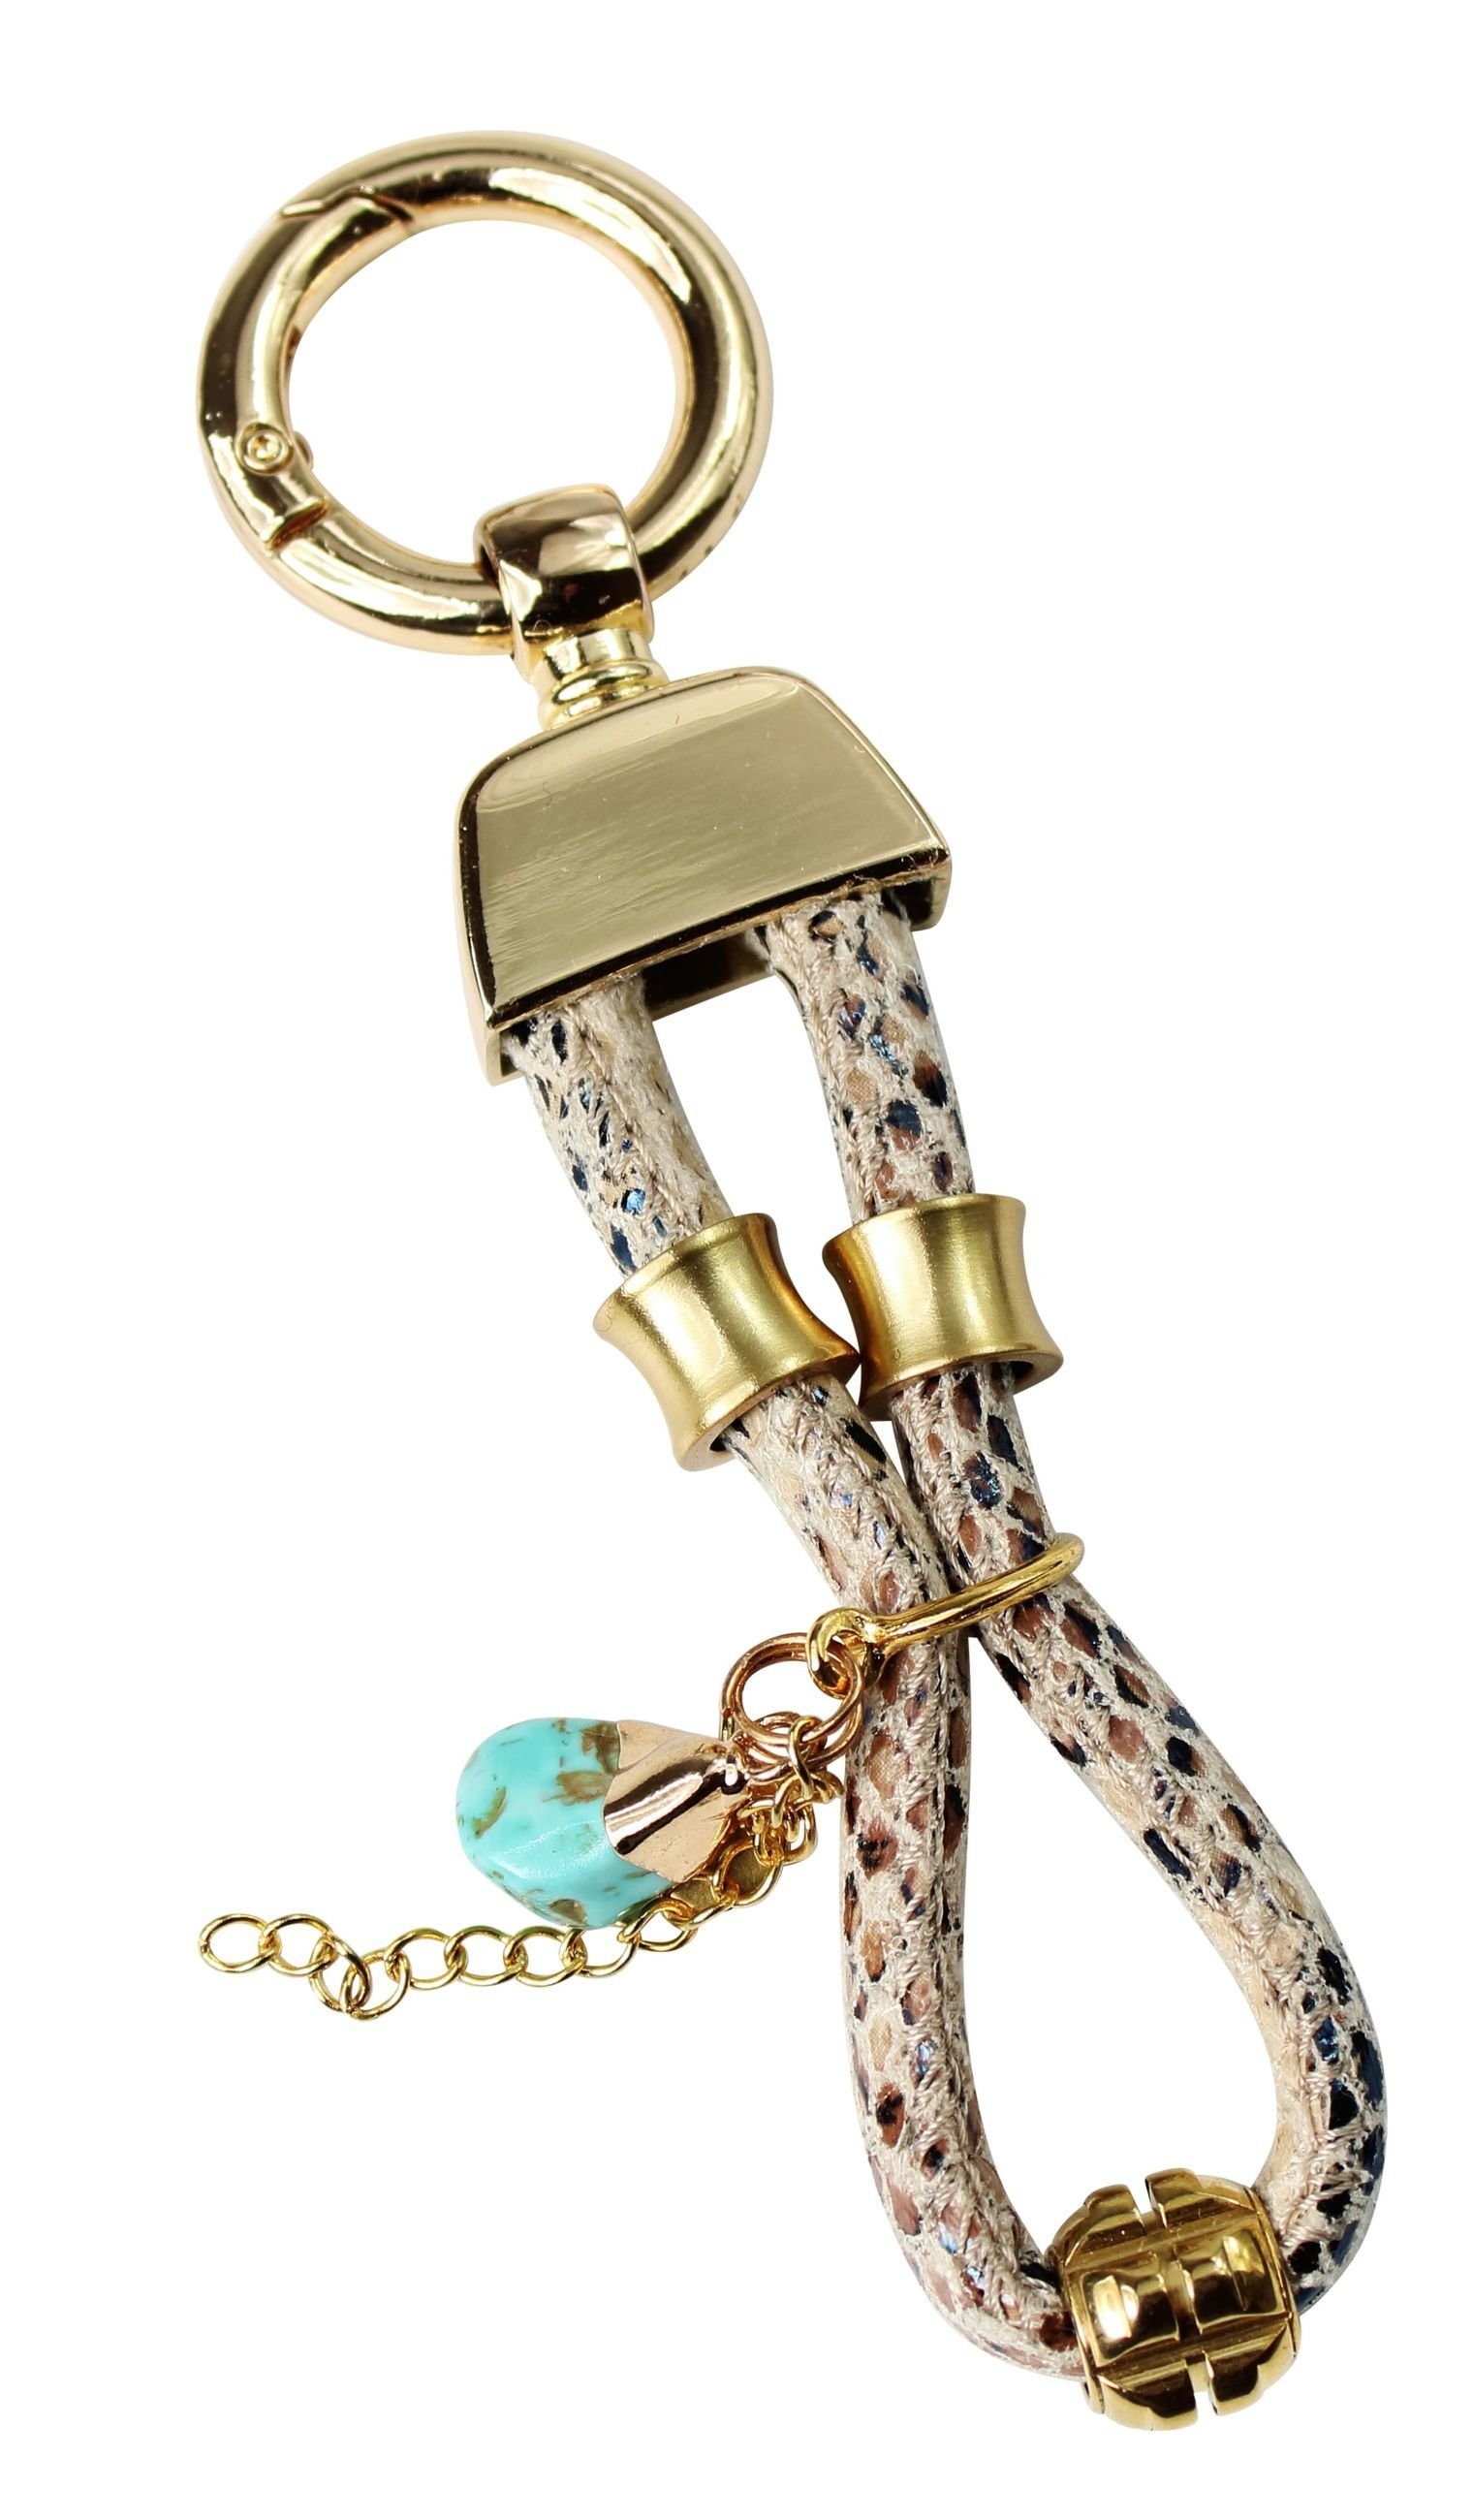 Damen Schlüsselanhänger FRONHOFER Schlüsselanhänger 18878, Schlüsselanhänger mit Lederkordel in Schlangenoptik und Goldzierteile